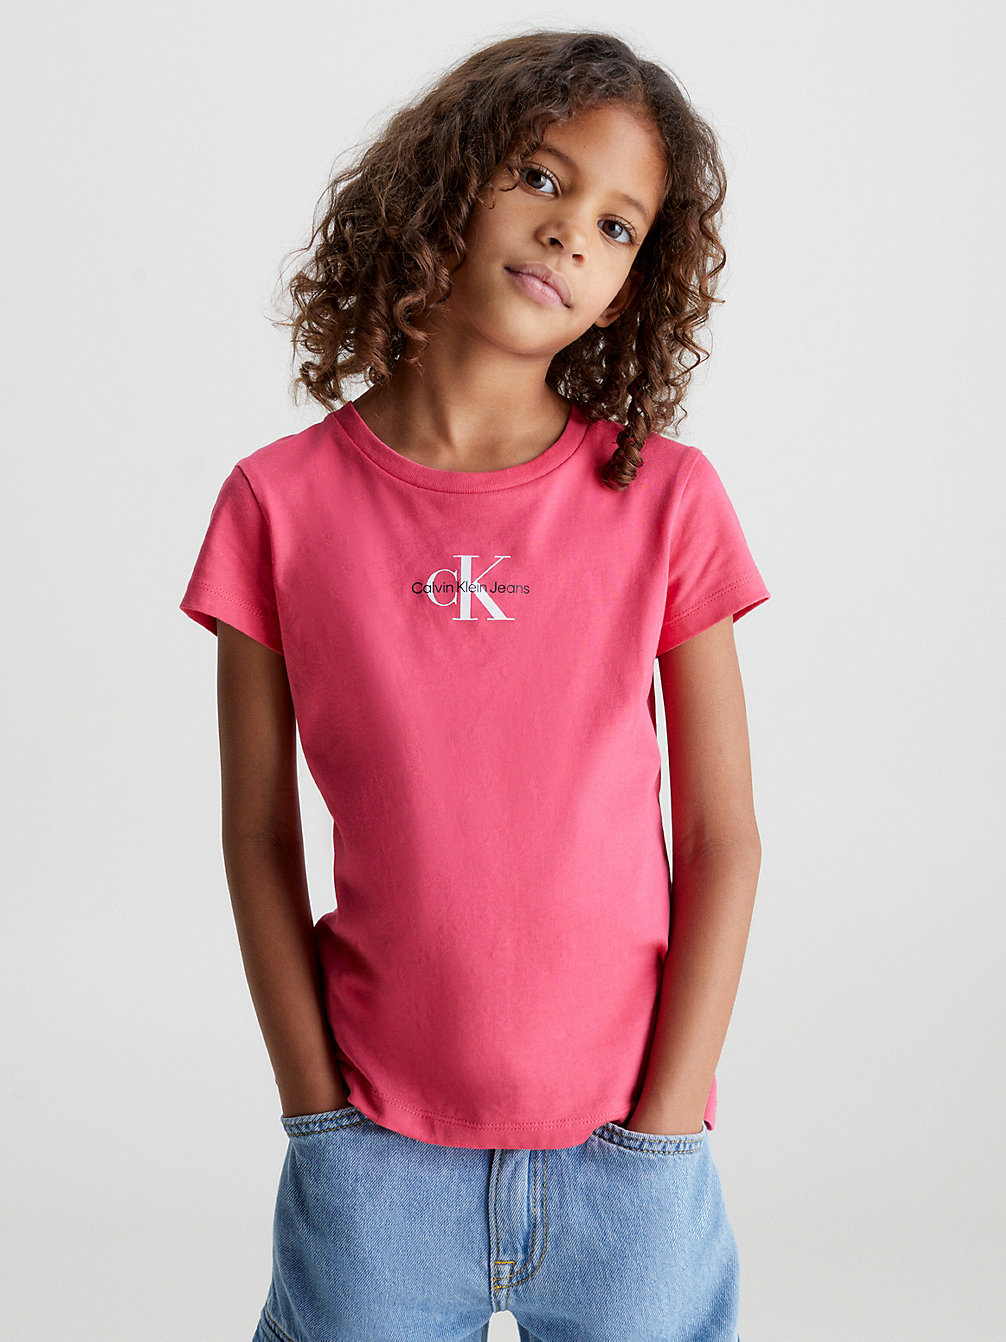 PINK FLASH Schmales T-Shirt Aus Bio-Baumwolle undefined girls Calvin Klein